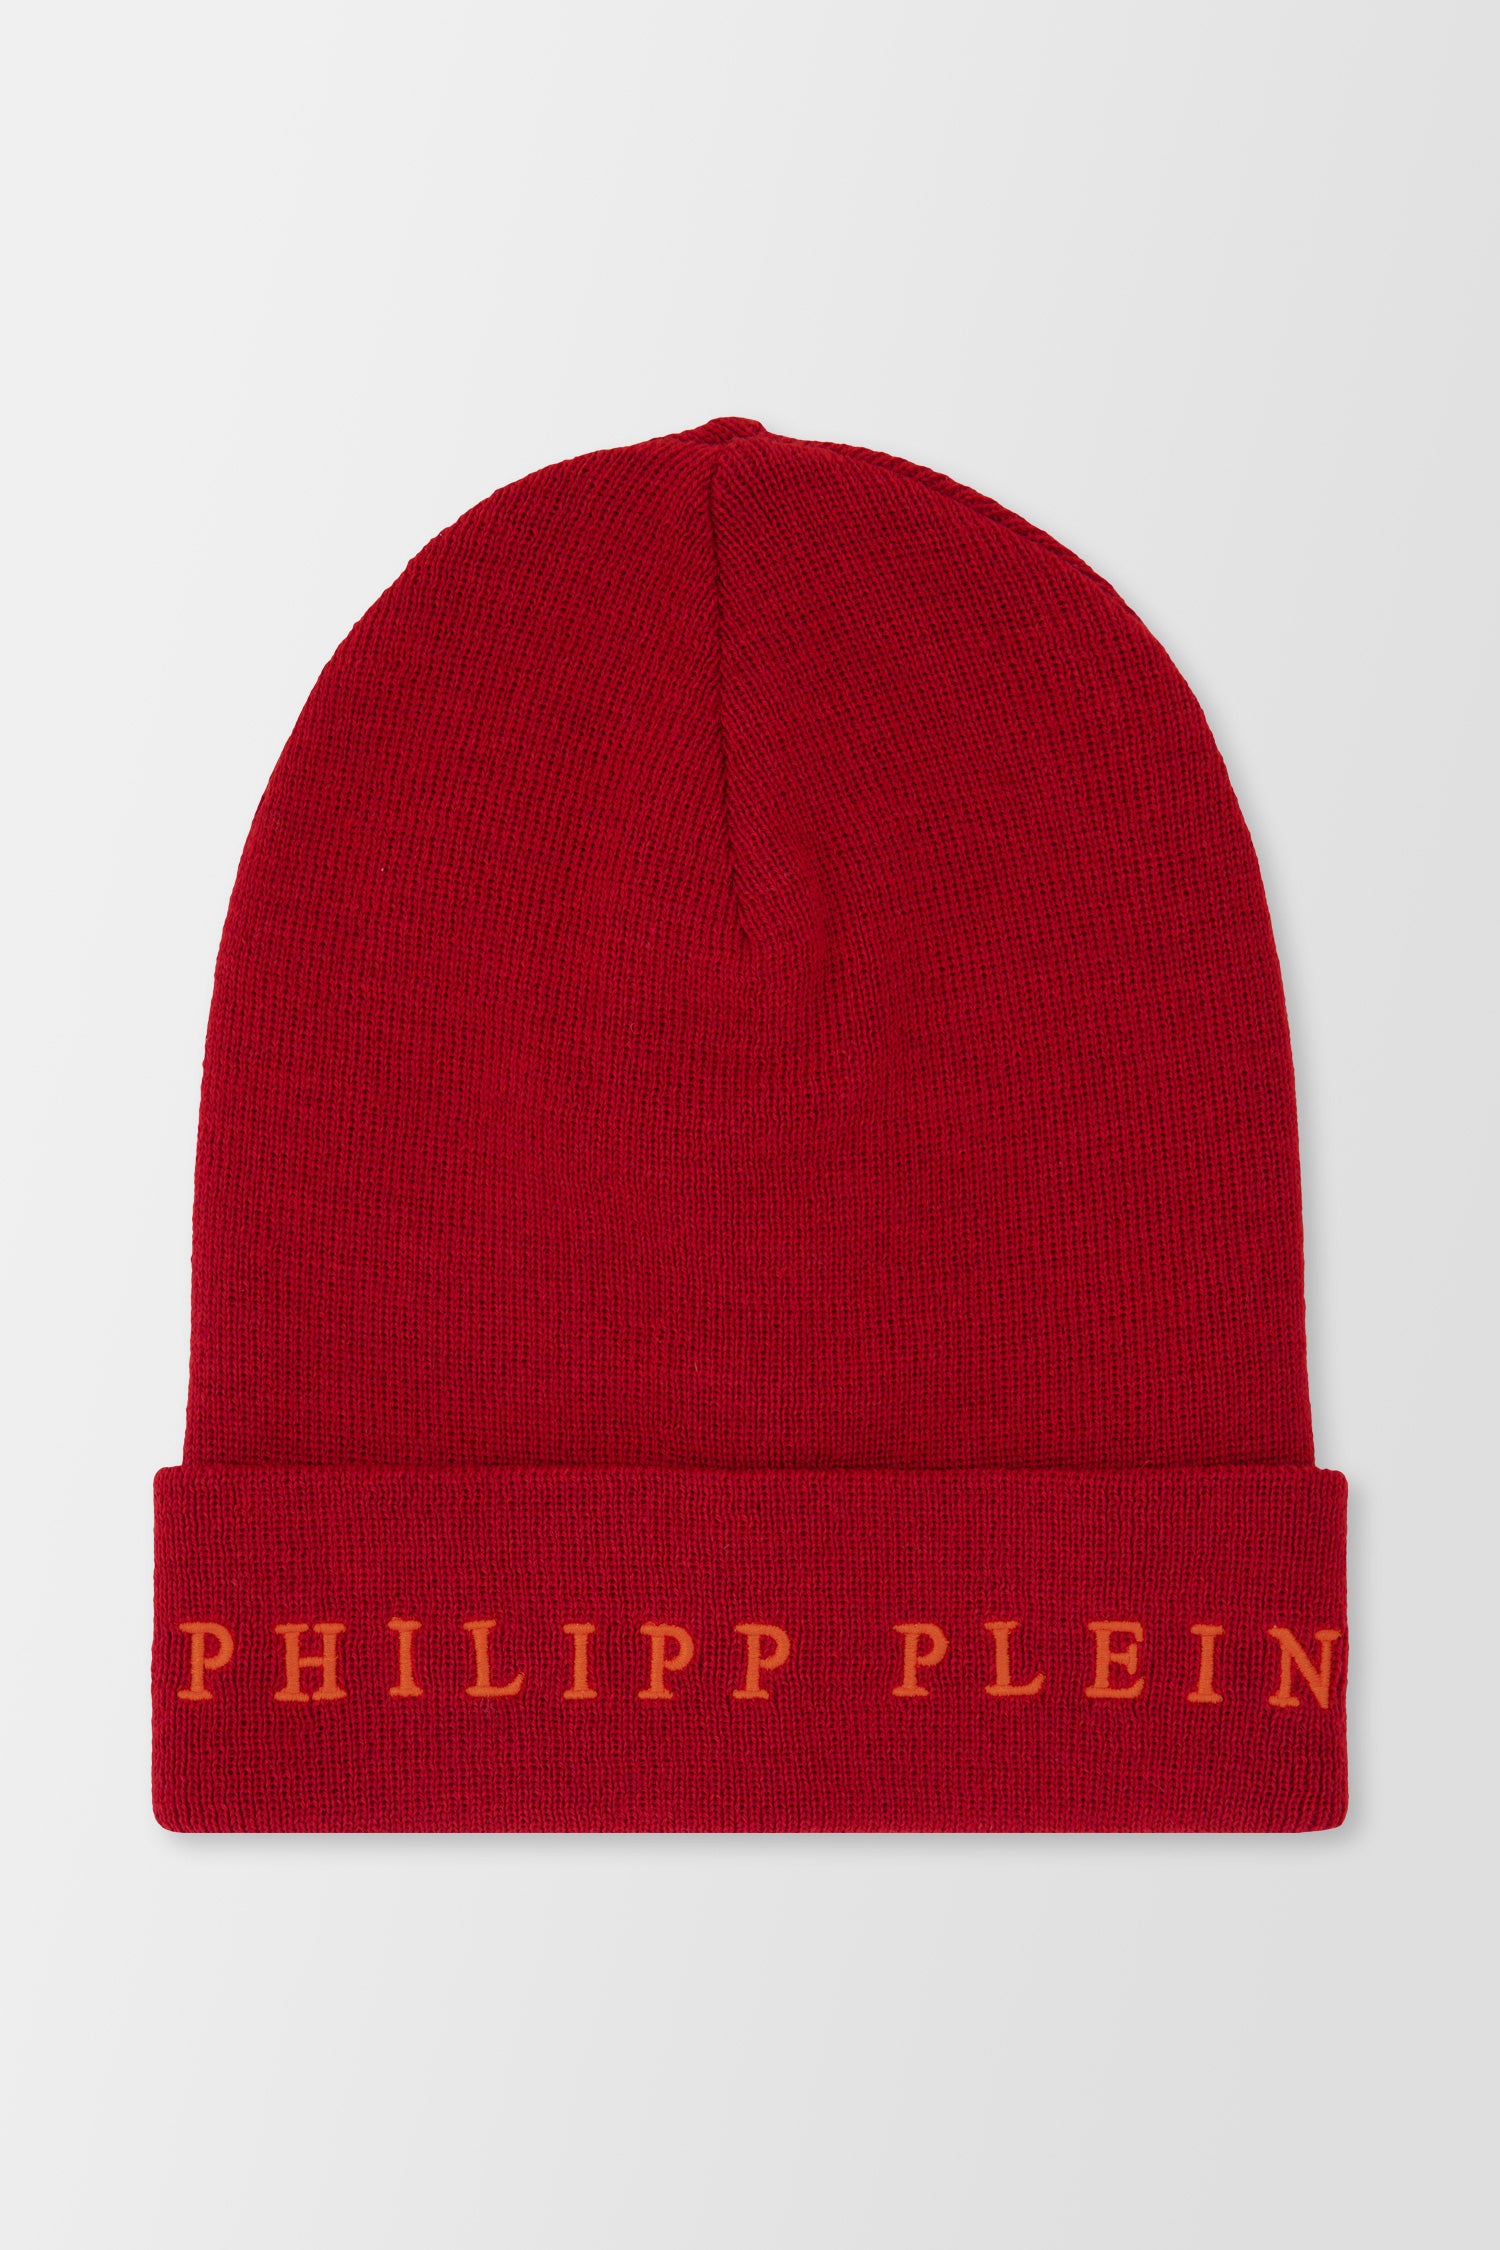 Philipp Plein Red Hat